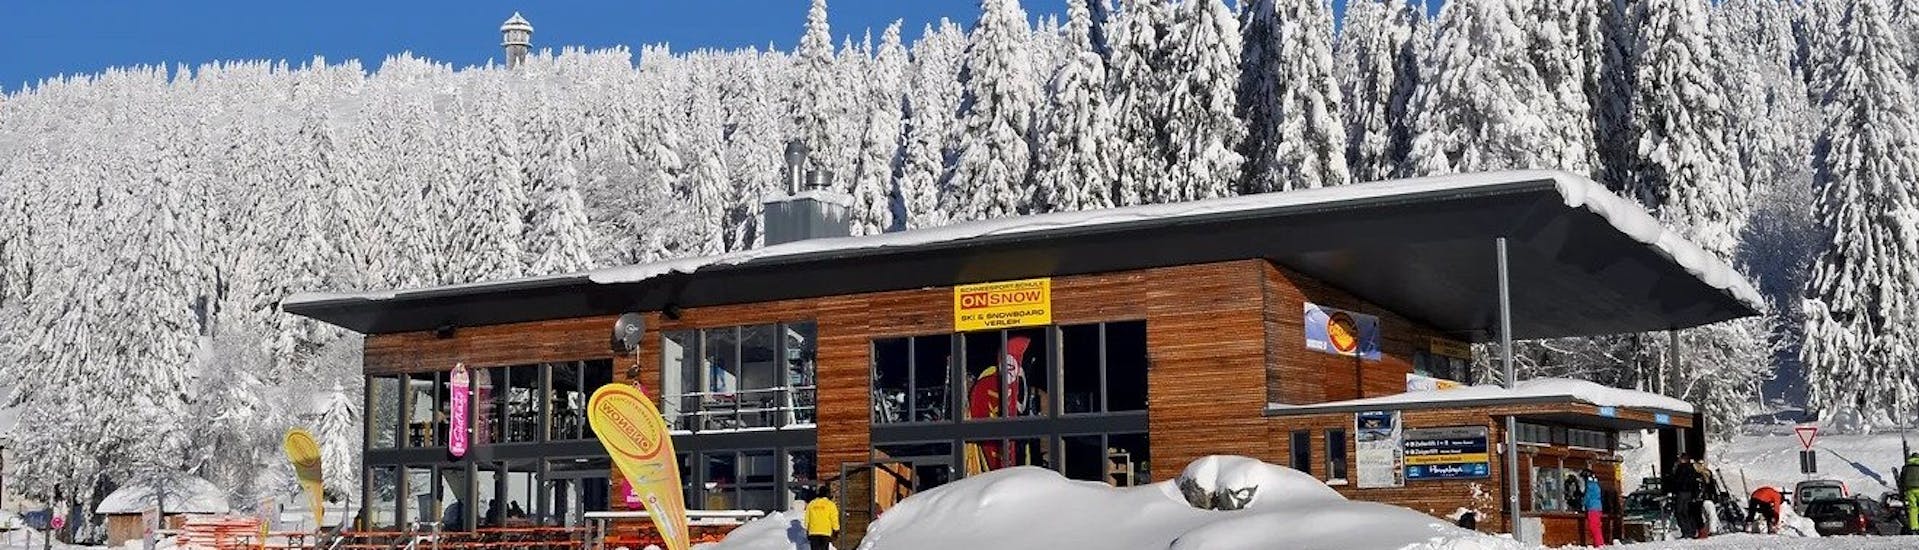 Une photo de l'école de ski ON SNOW Feldberg pendant les Cours particuliers de ski Adultes pour Tous Niveaux en hiver par une journée ensoleillée.